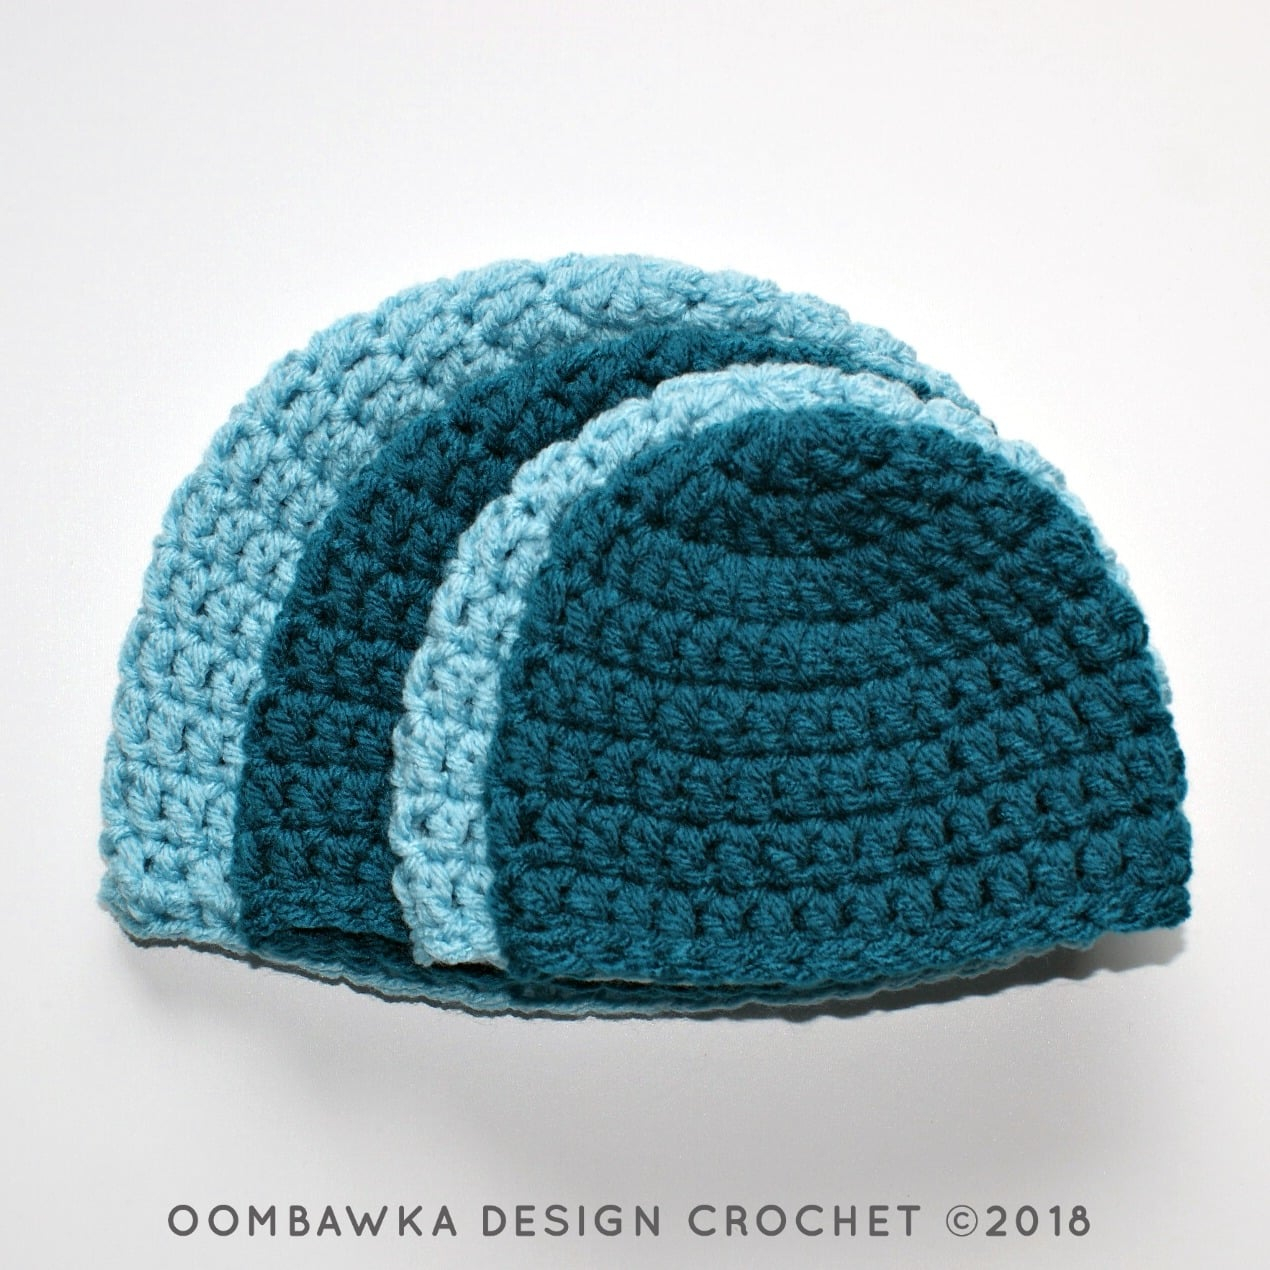 Free Crochet Hat Patterns Simple Double Crochet Hat Pattern Oombawka Design Crochet